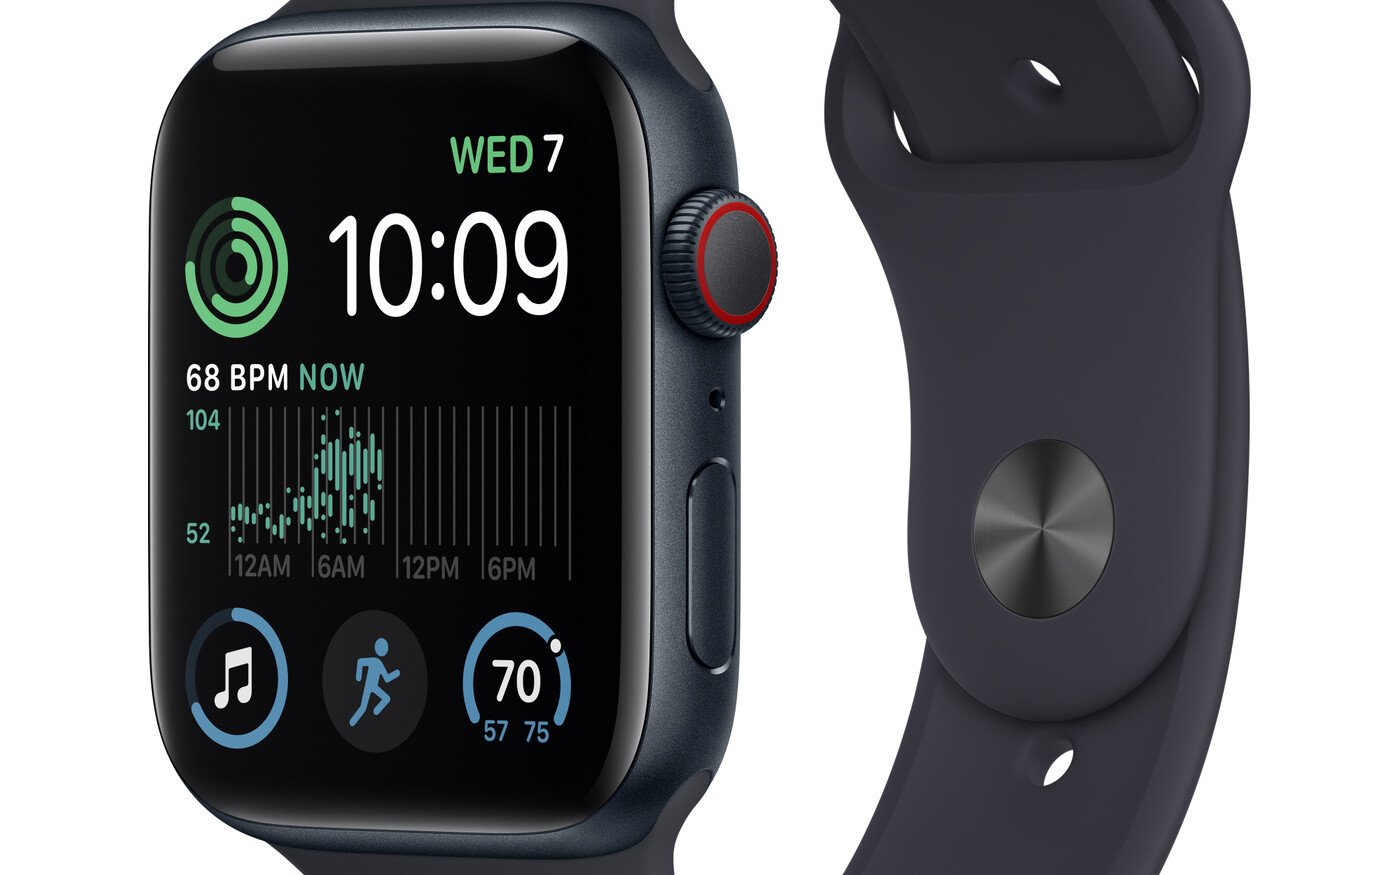 Apple Watch SE GPS 